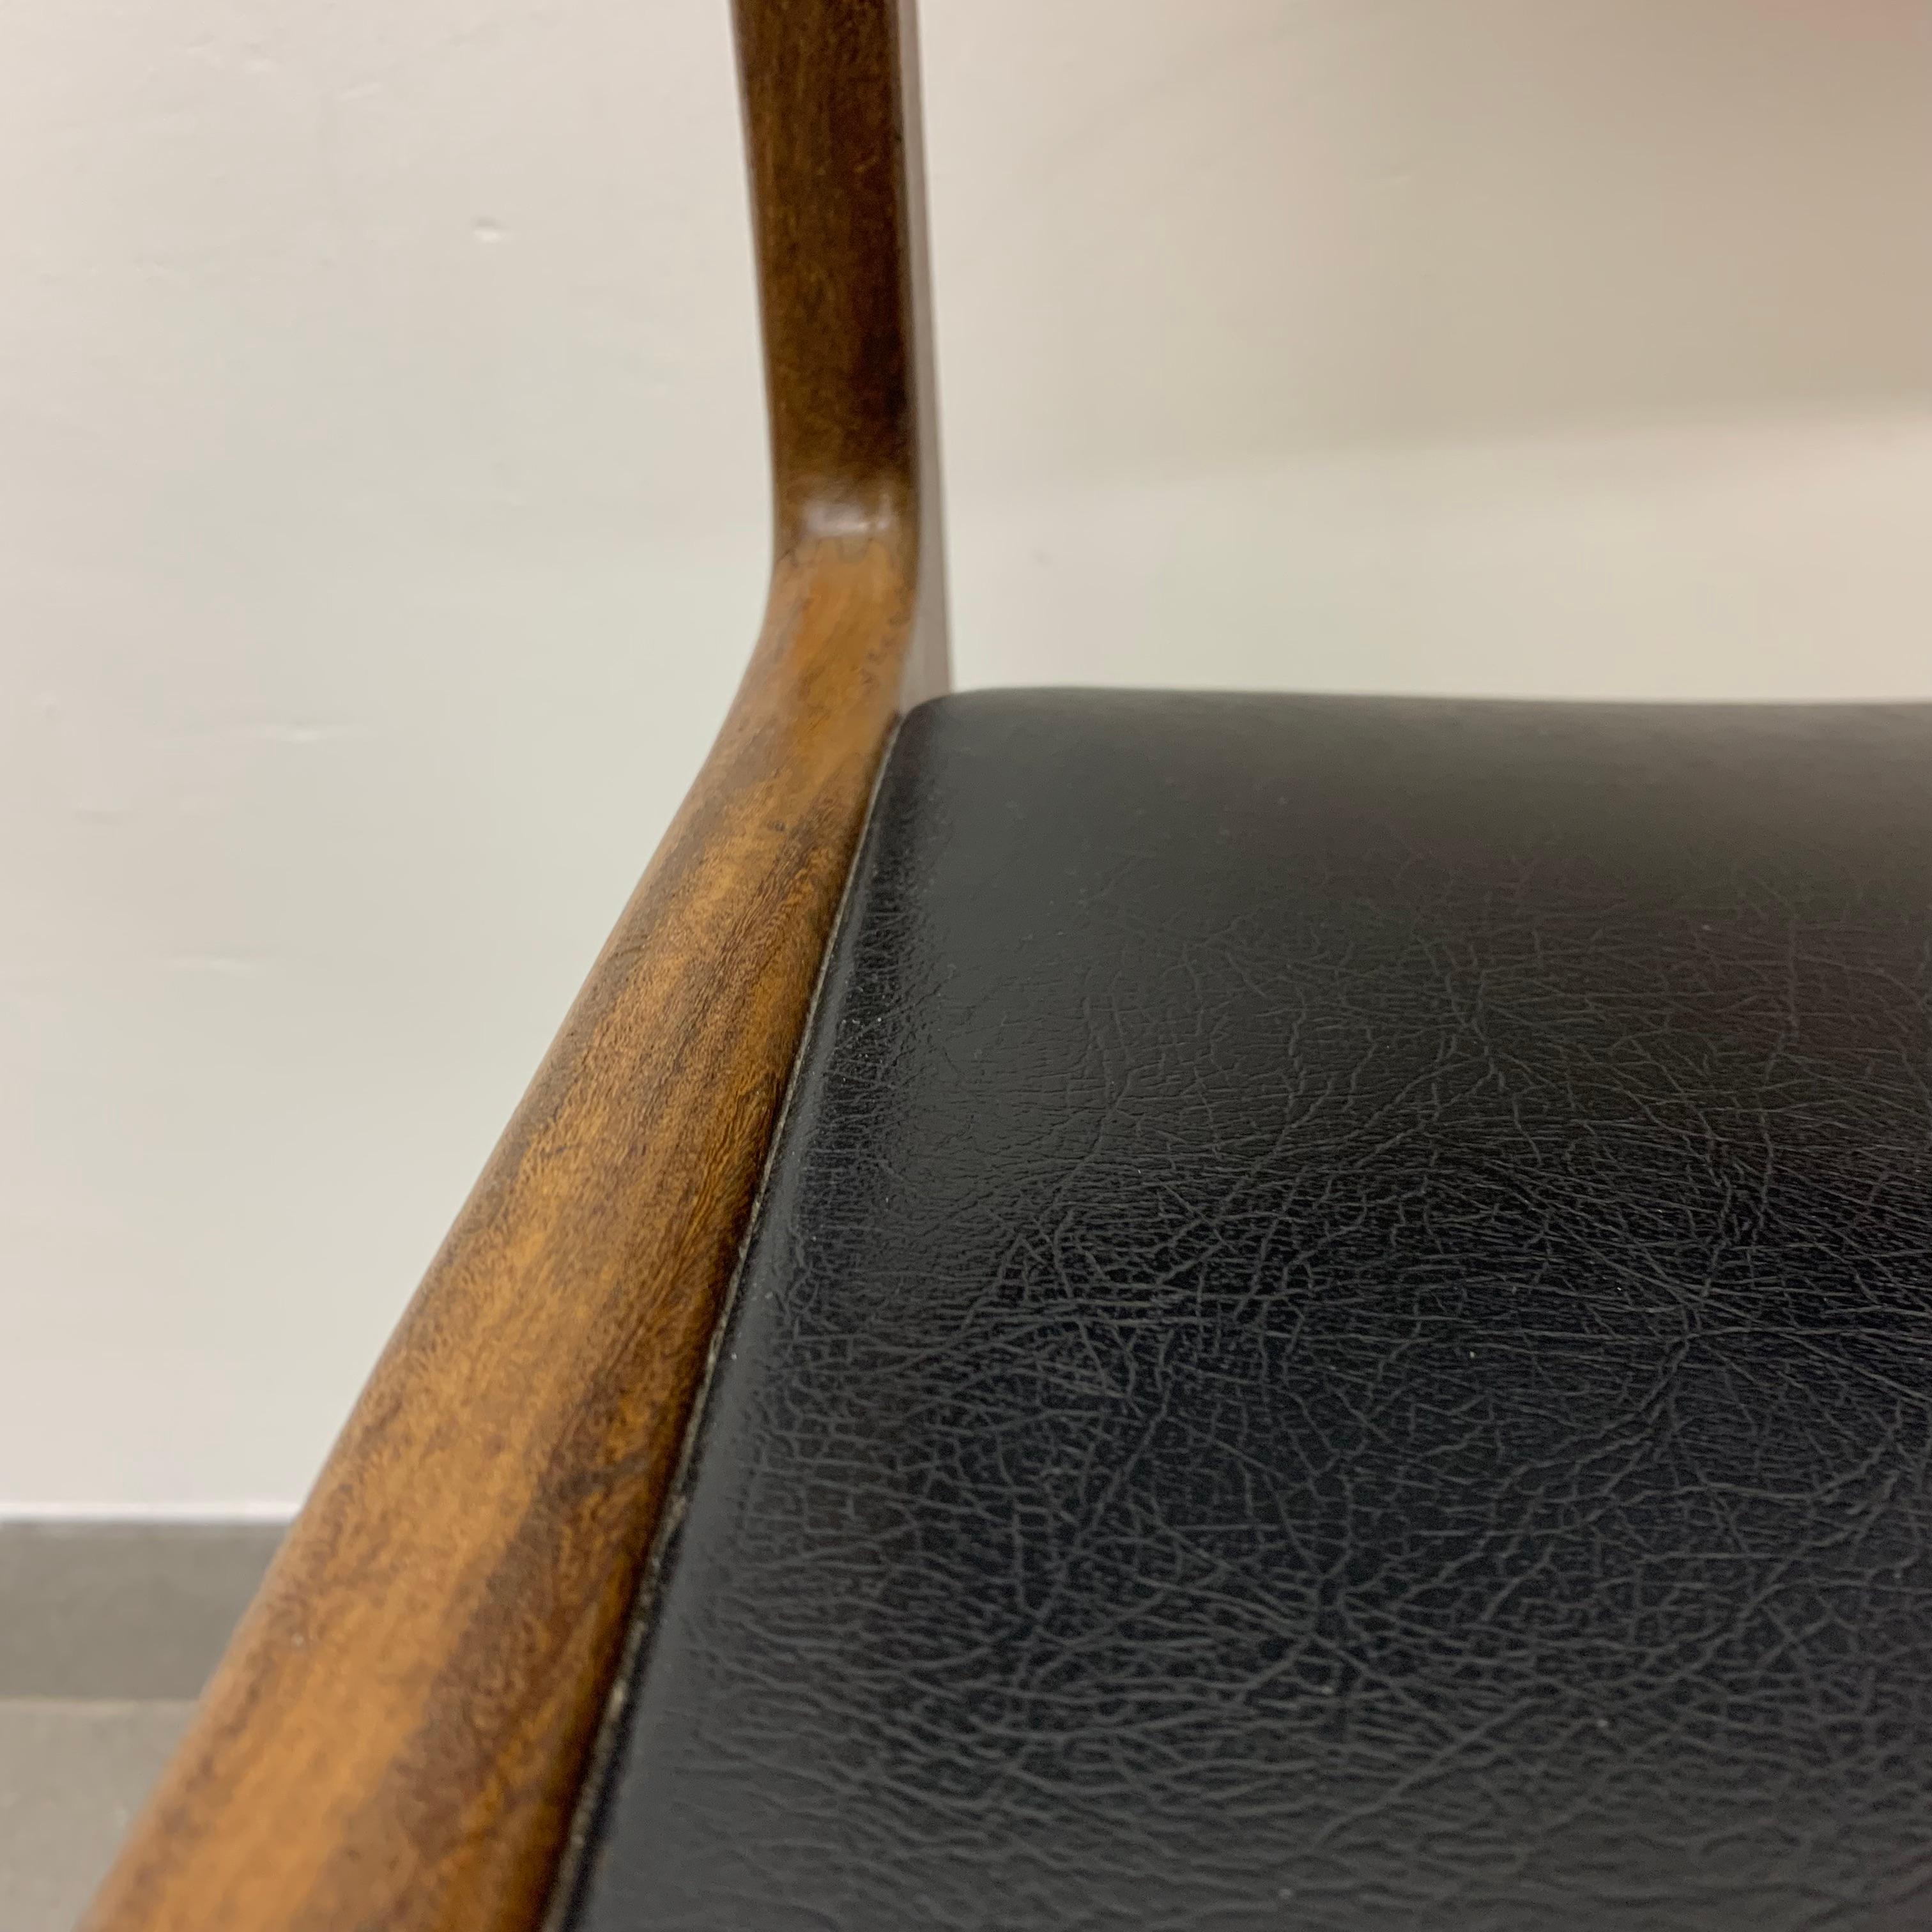 Hartmut Lohmeyer for Wilkhahn 1950’s dining chair teak wood design For Sale 5